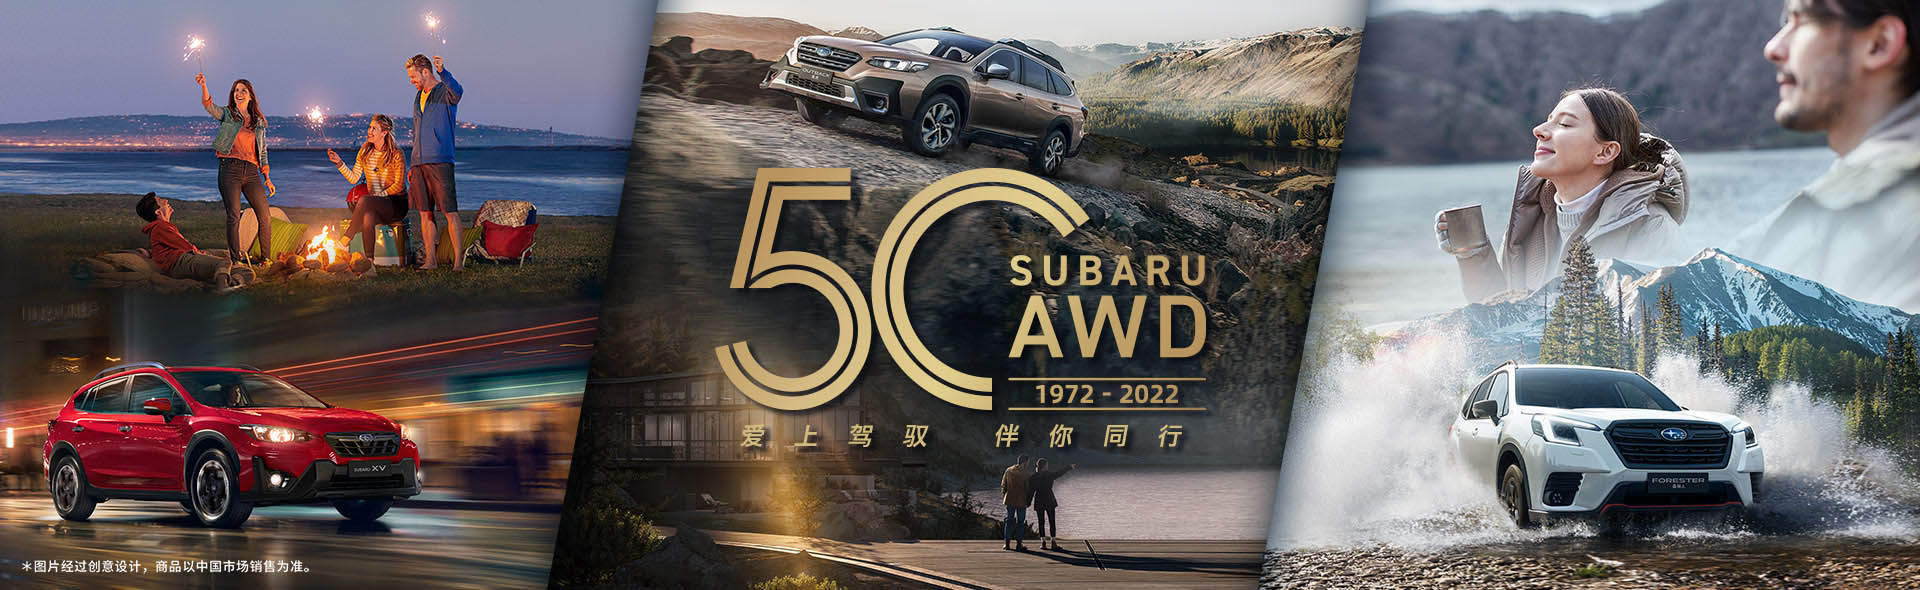 SUBARU AWD 50周年